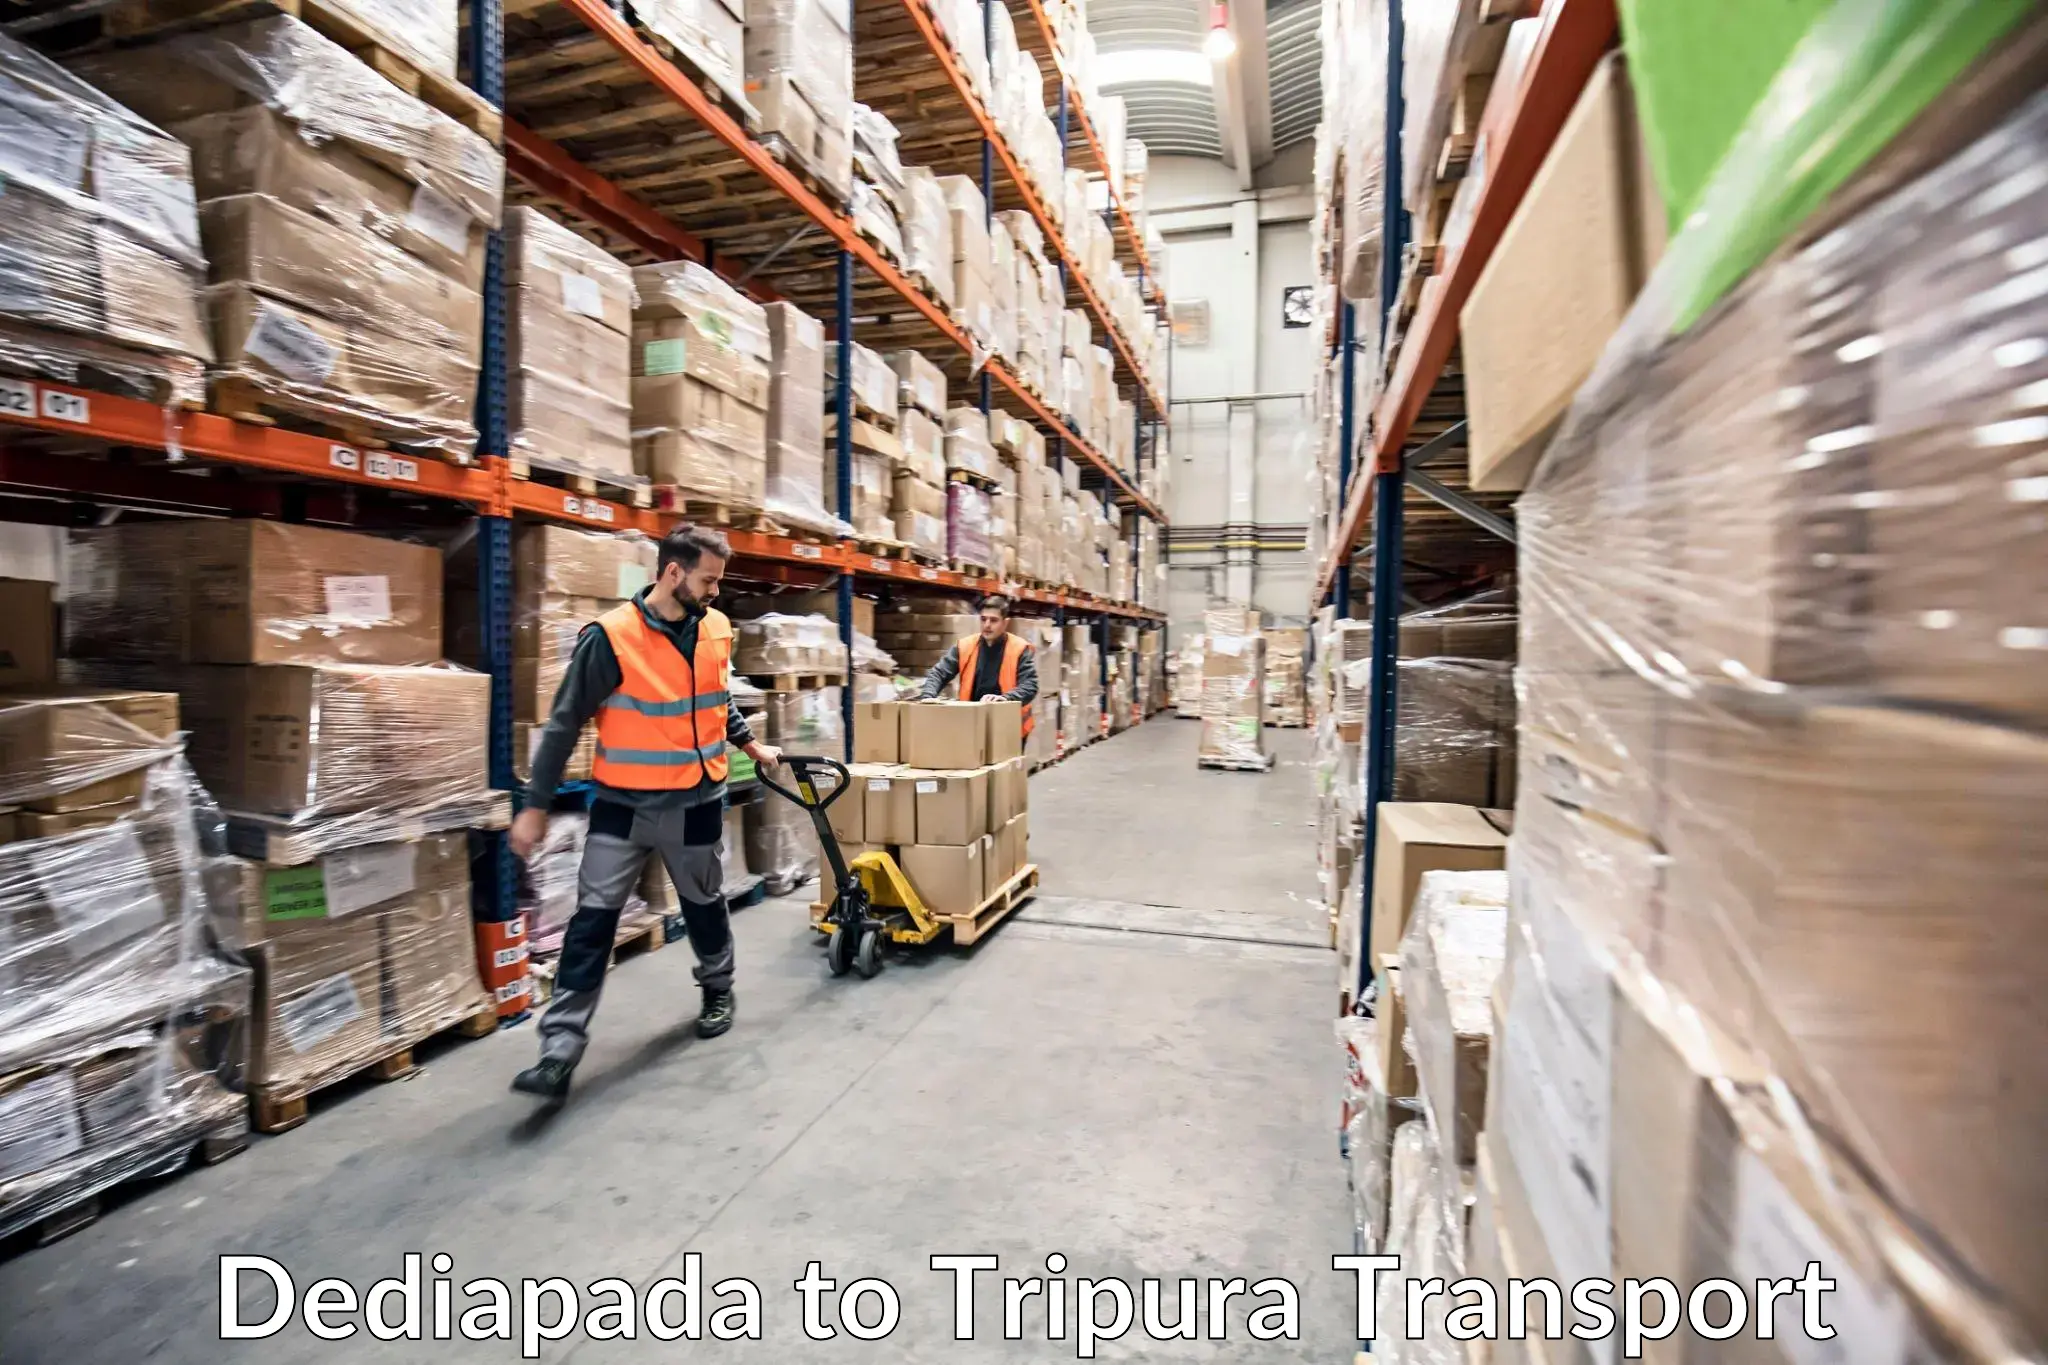 Shipping partner Dediapada to Tripura